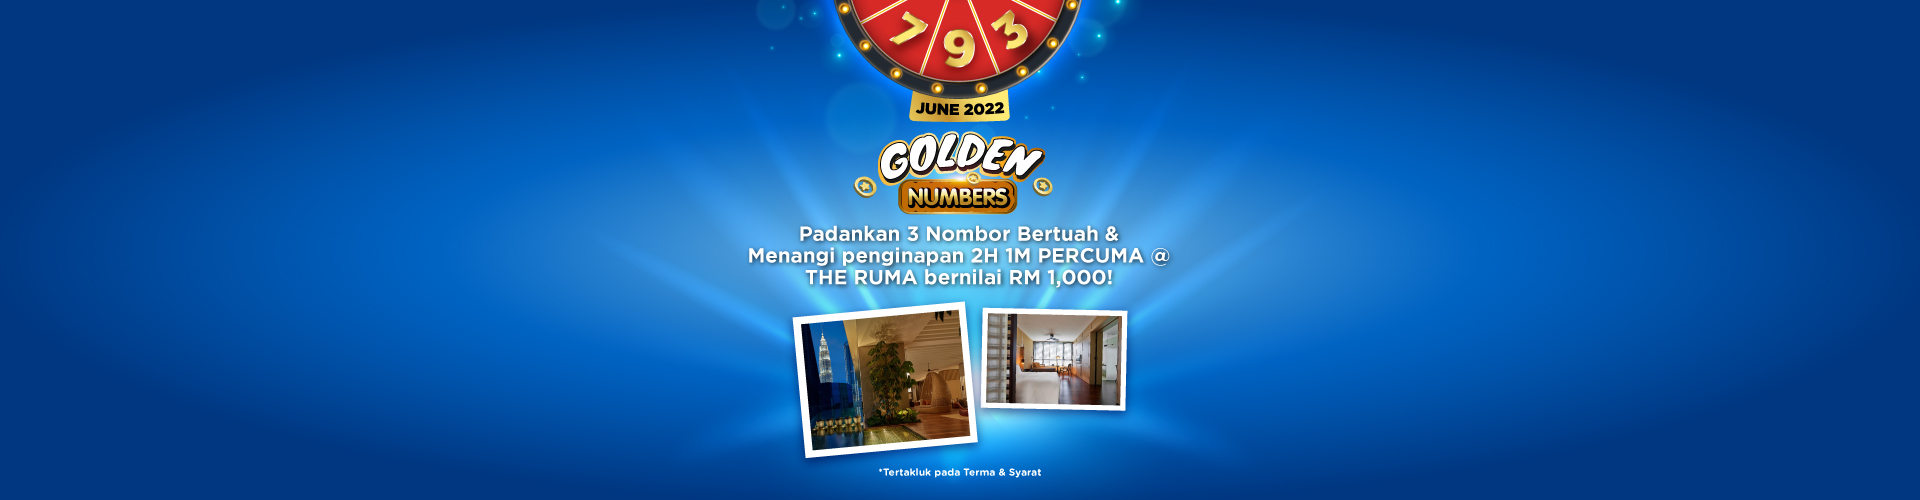 Golden-Number_June_Promo_1920x500_ENG